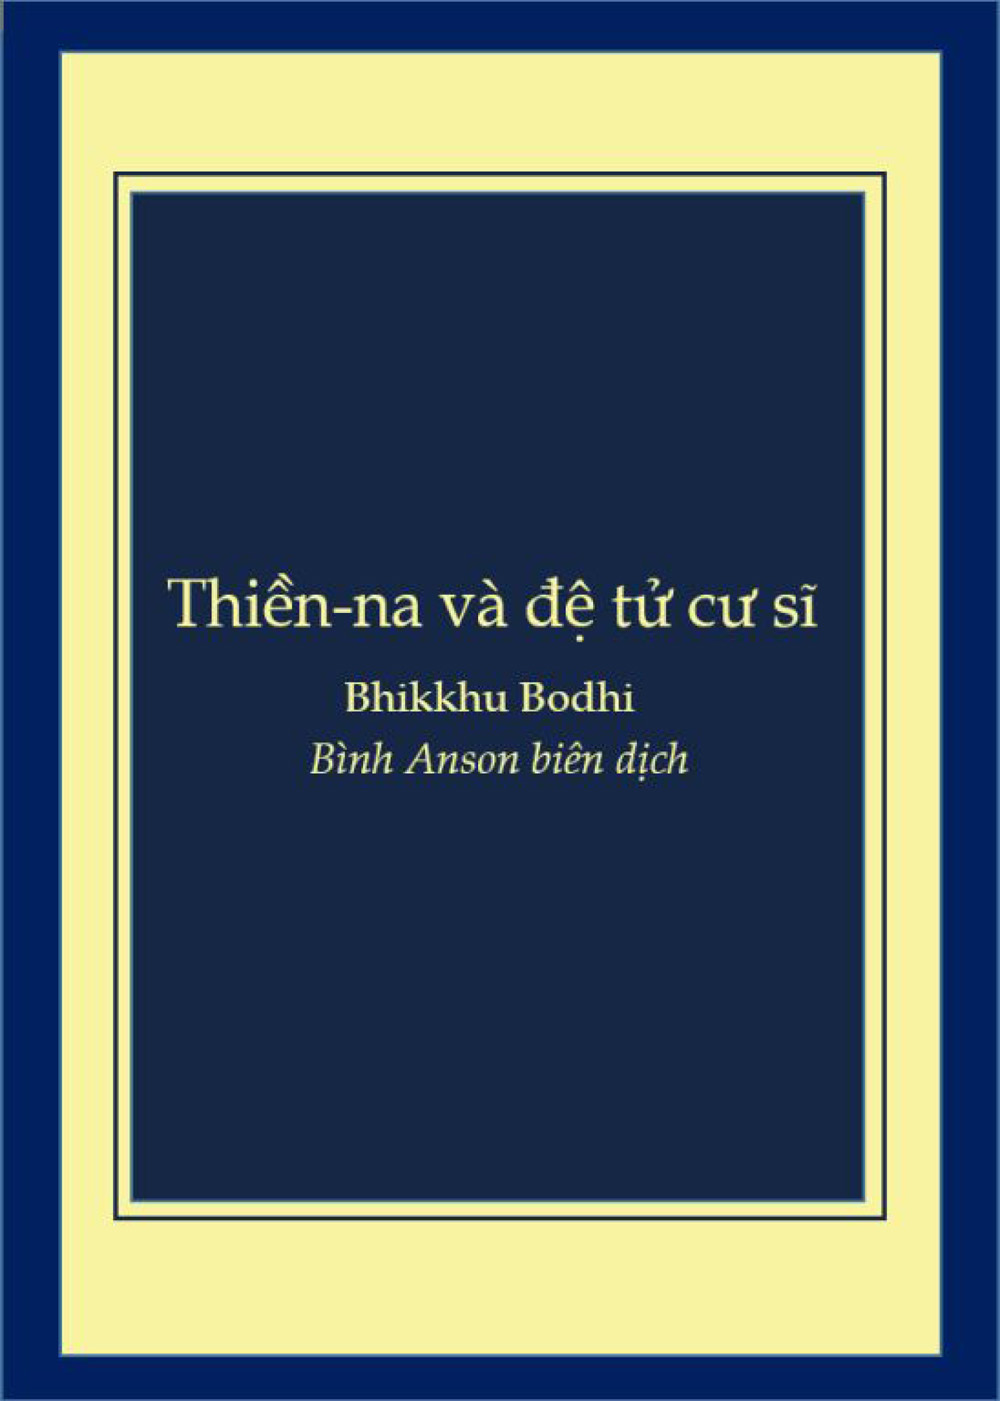 Thiền-na và đệ tử cư sĩ, dựa theo các bài kinh Pāli Tỳ-khưu Bodhi (2015) Bình Anson lược dịch (2019)-1